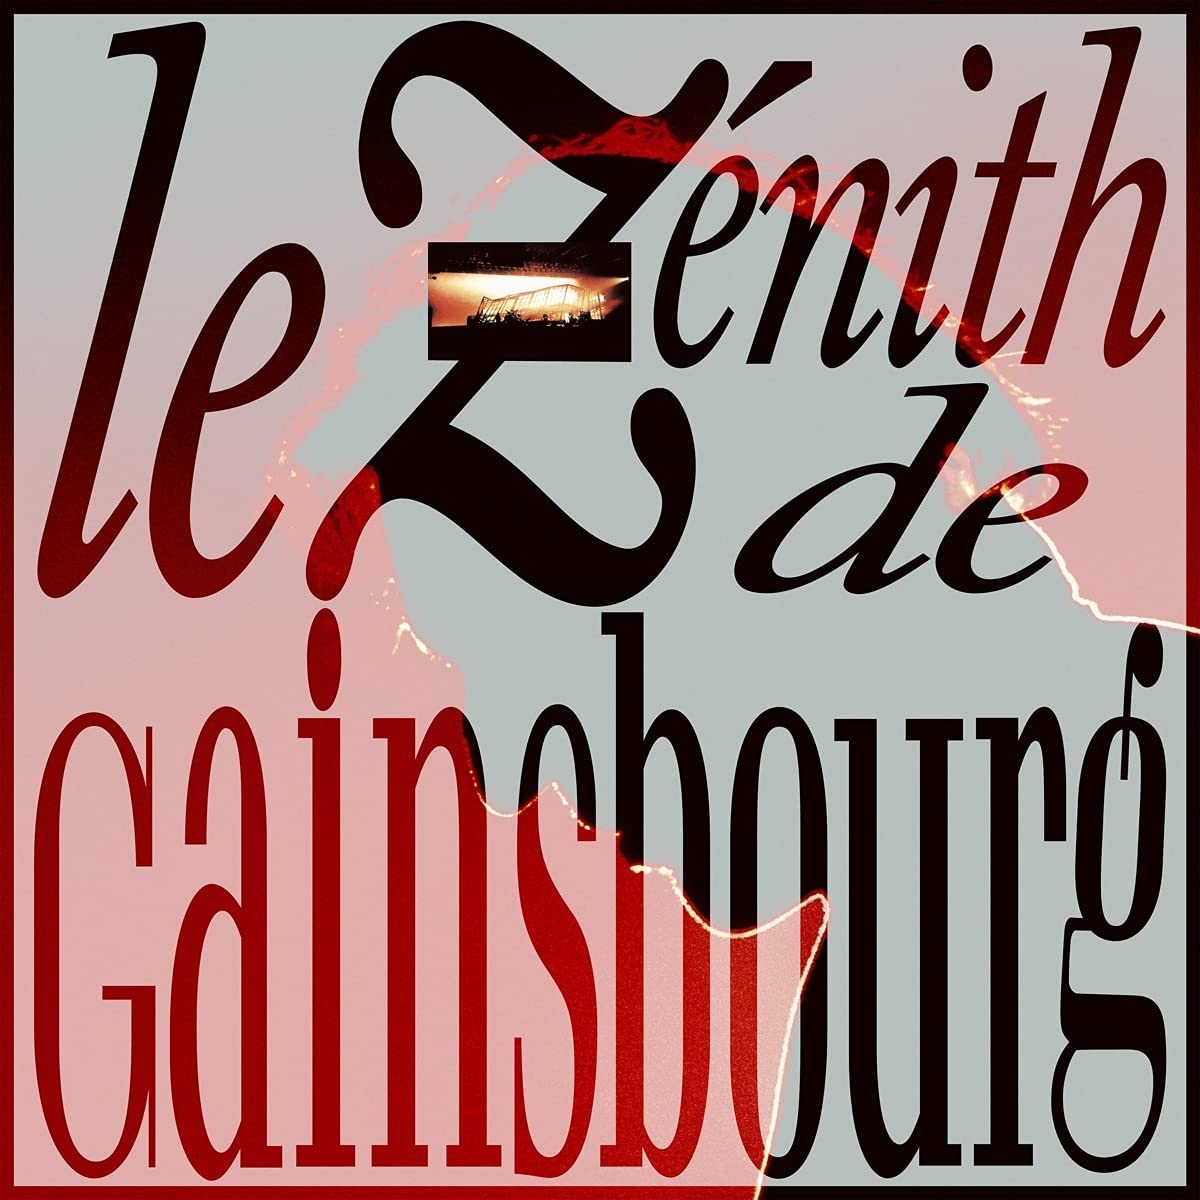 LE ZENITH DE GAINSBOURG